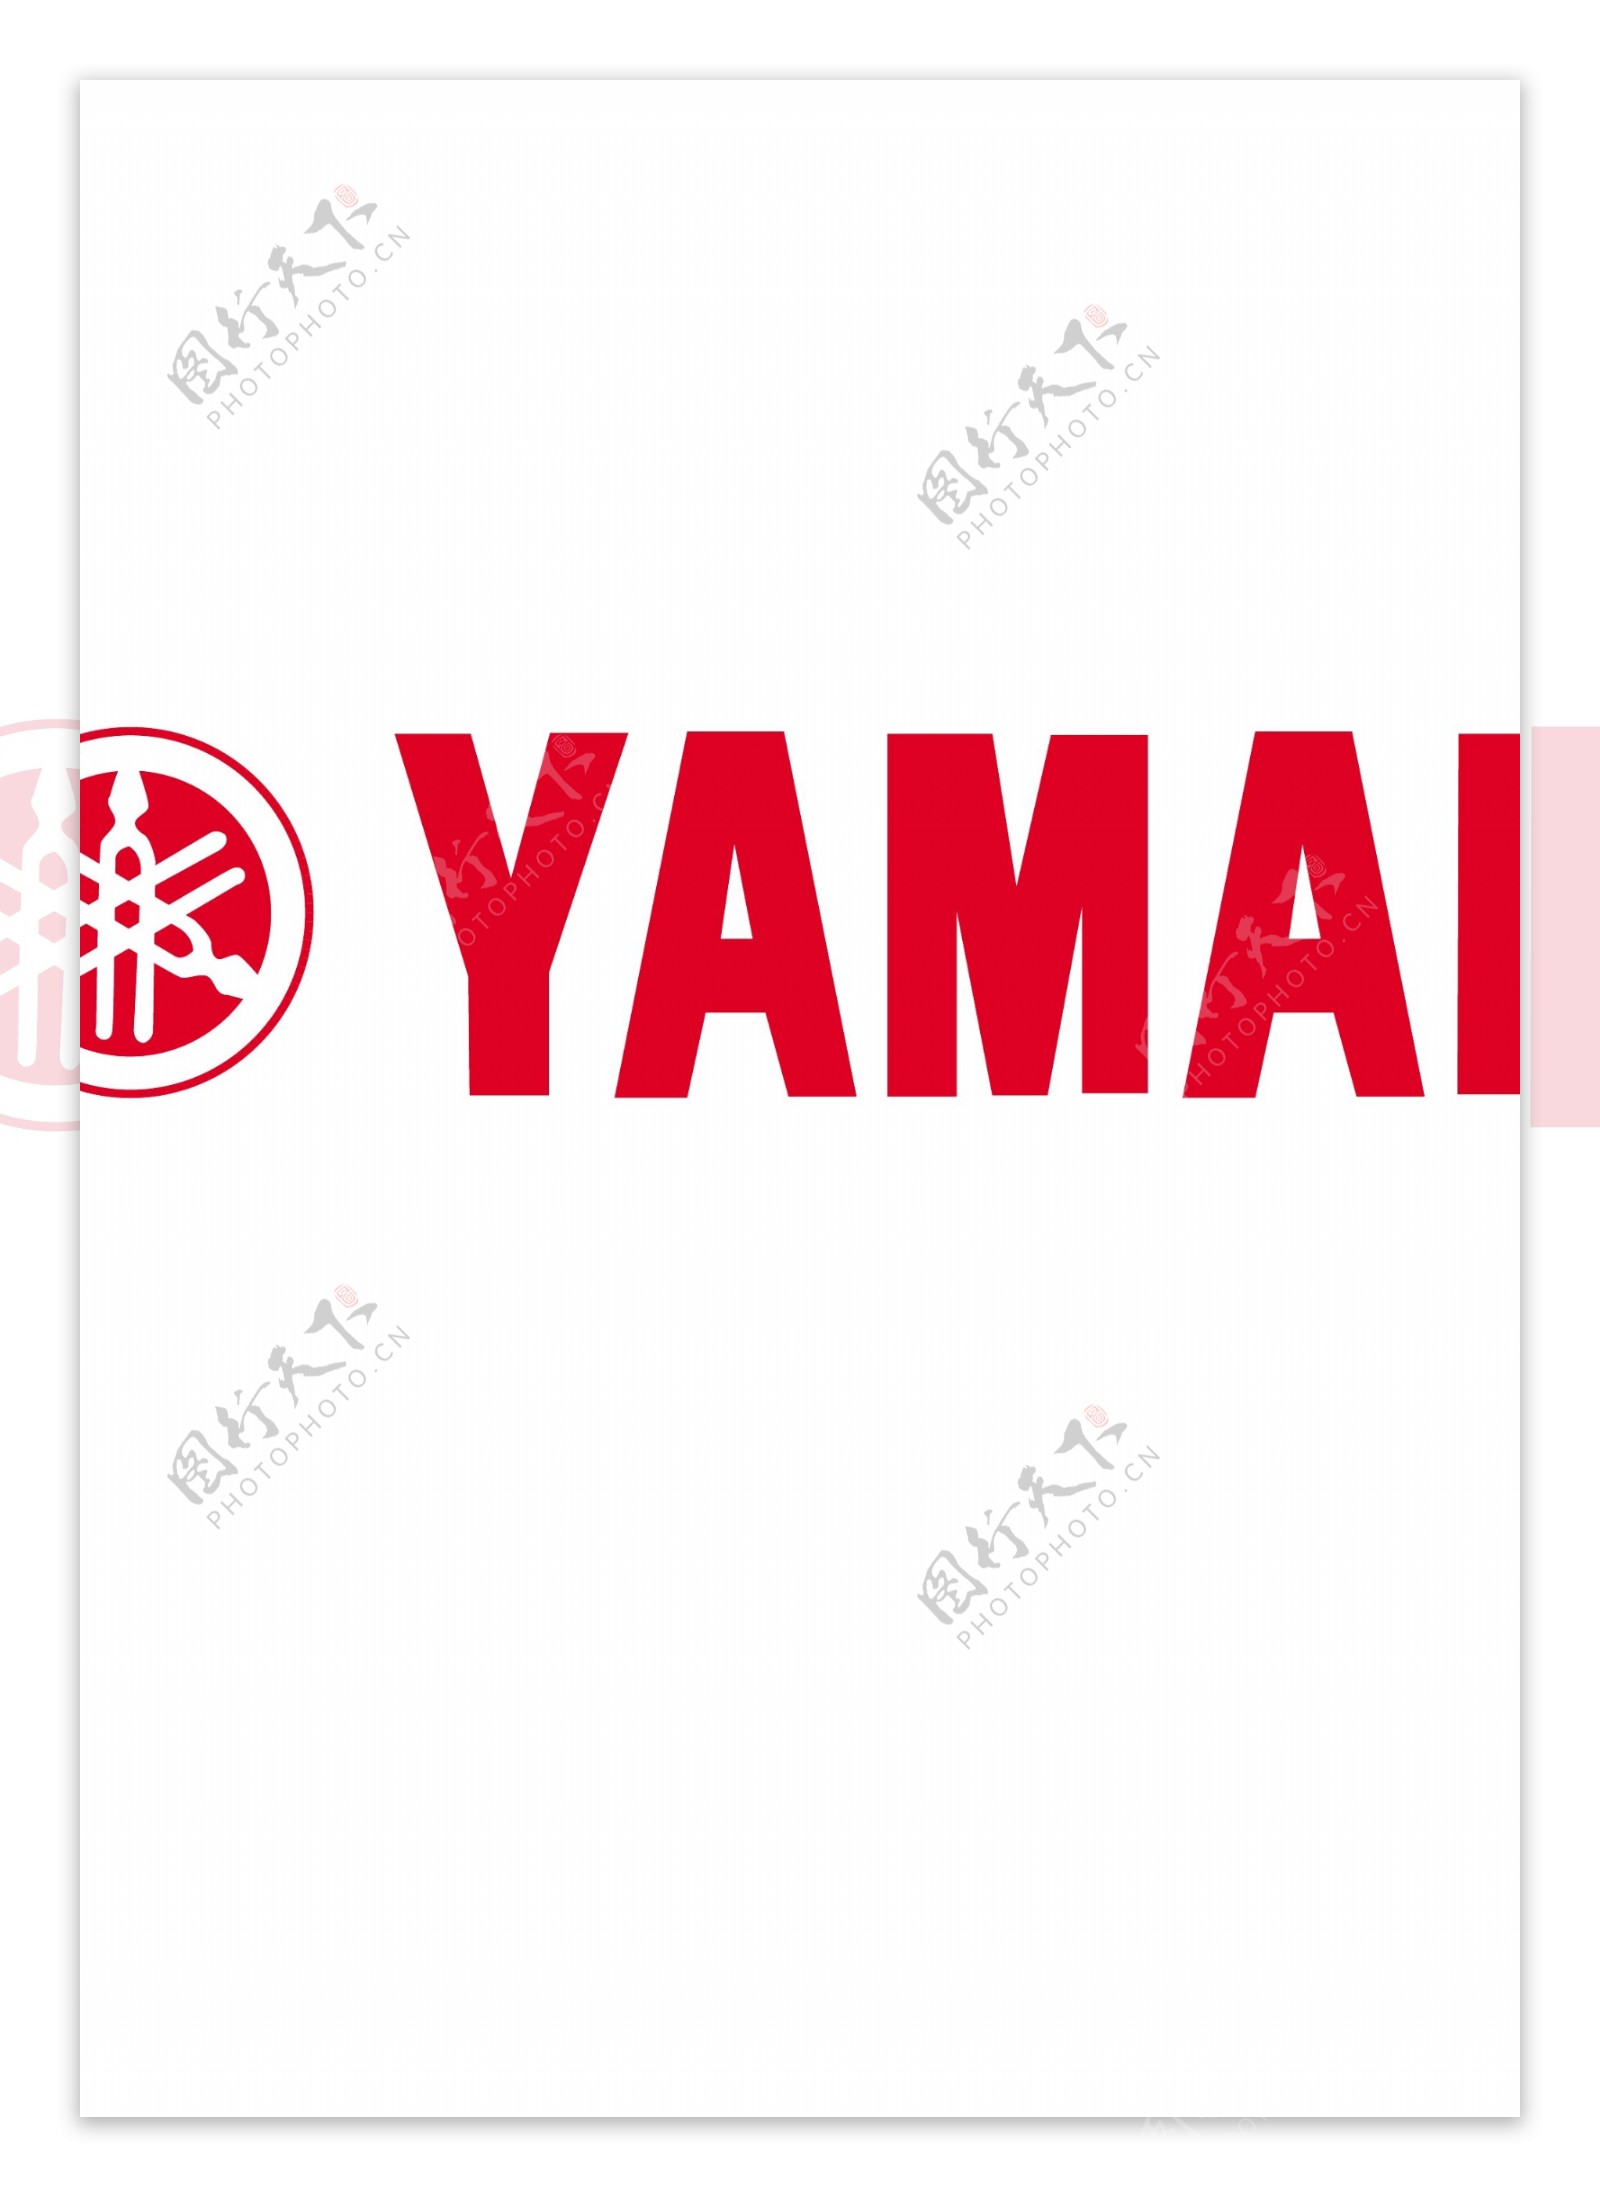 yamahalogo设计欣赏yamaha交通运输标志下载标志设计欣赏